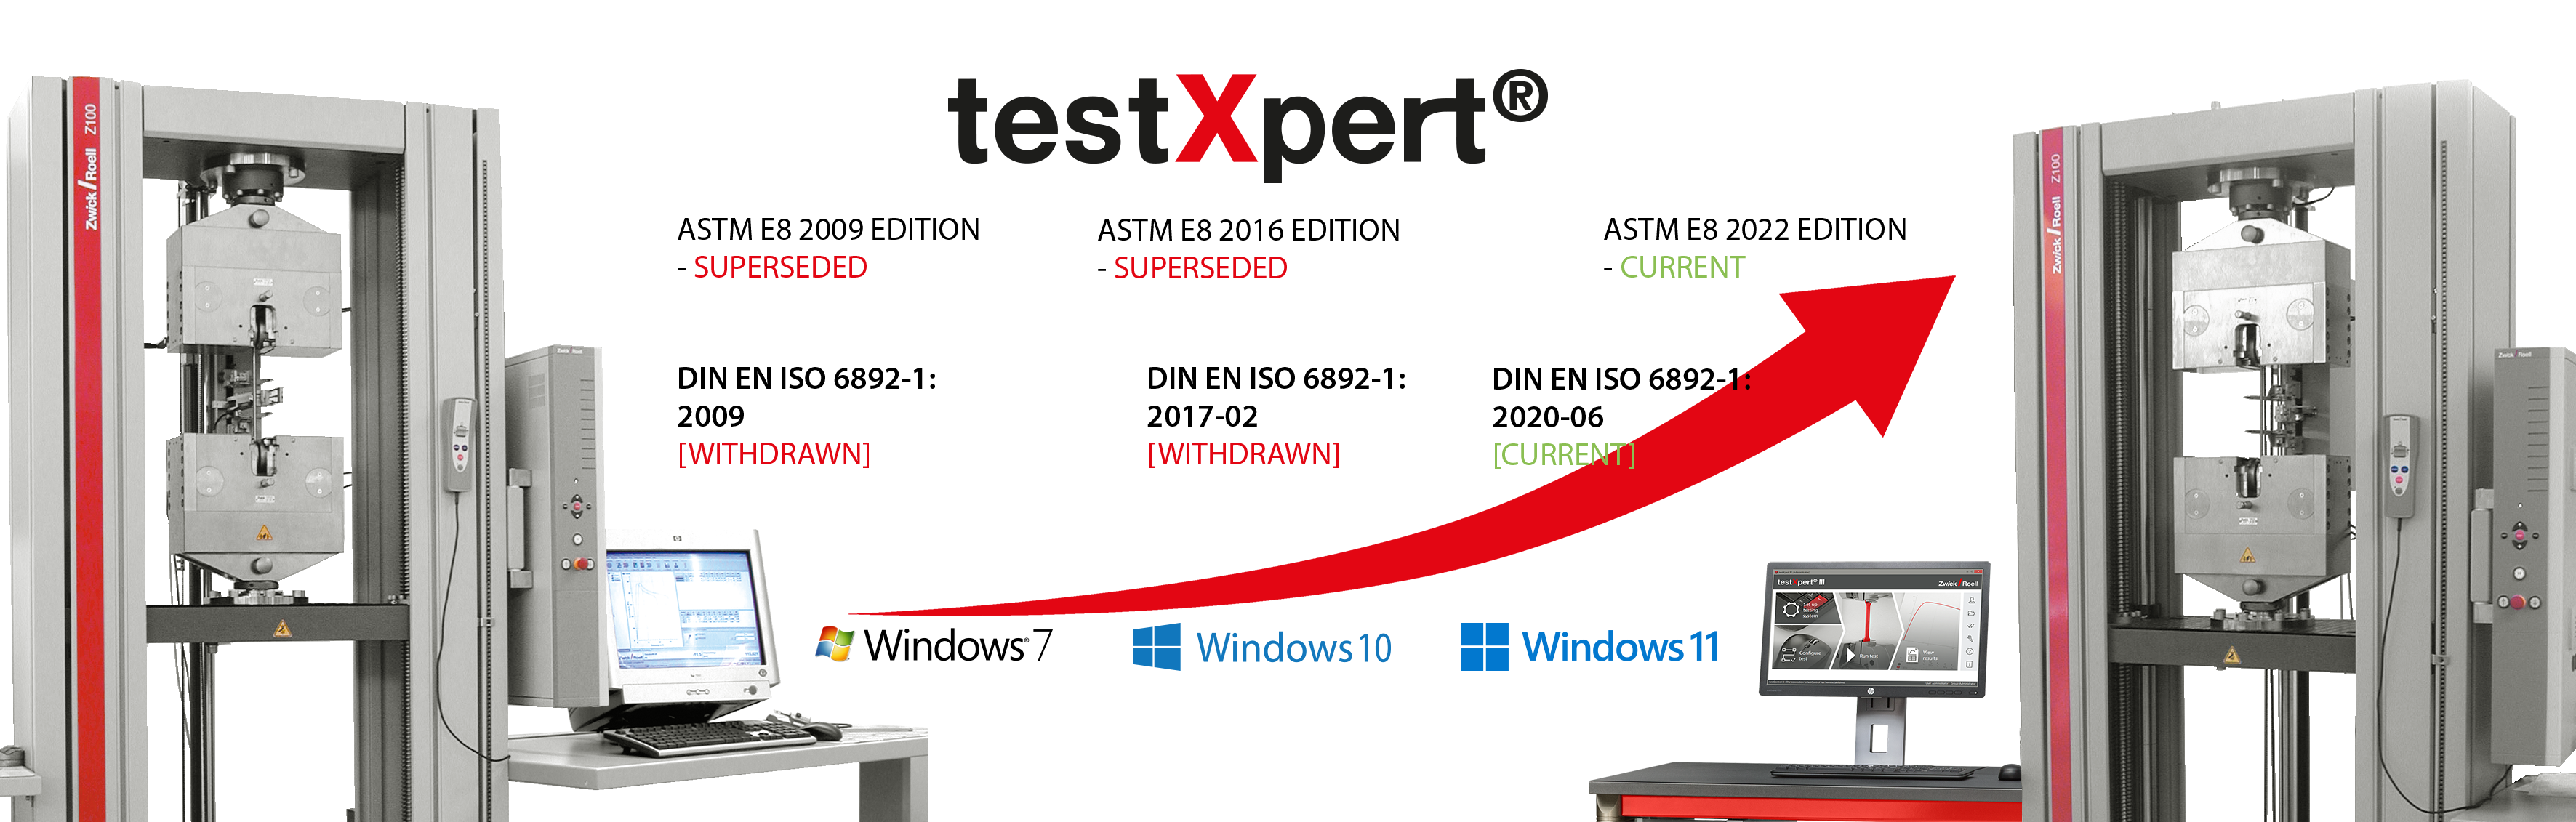 testXpert raste z vami, ne glede na to, ali se spremenijo standardi ali uvede nov operacijski sistem